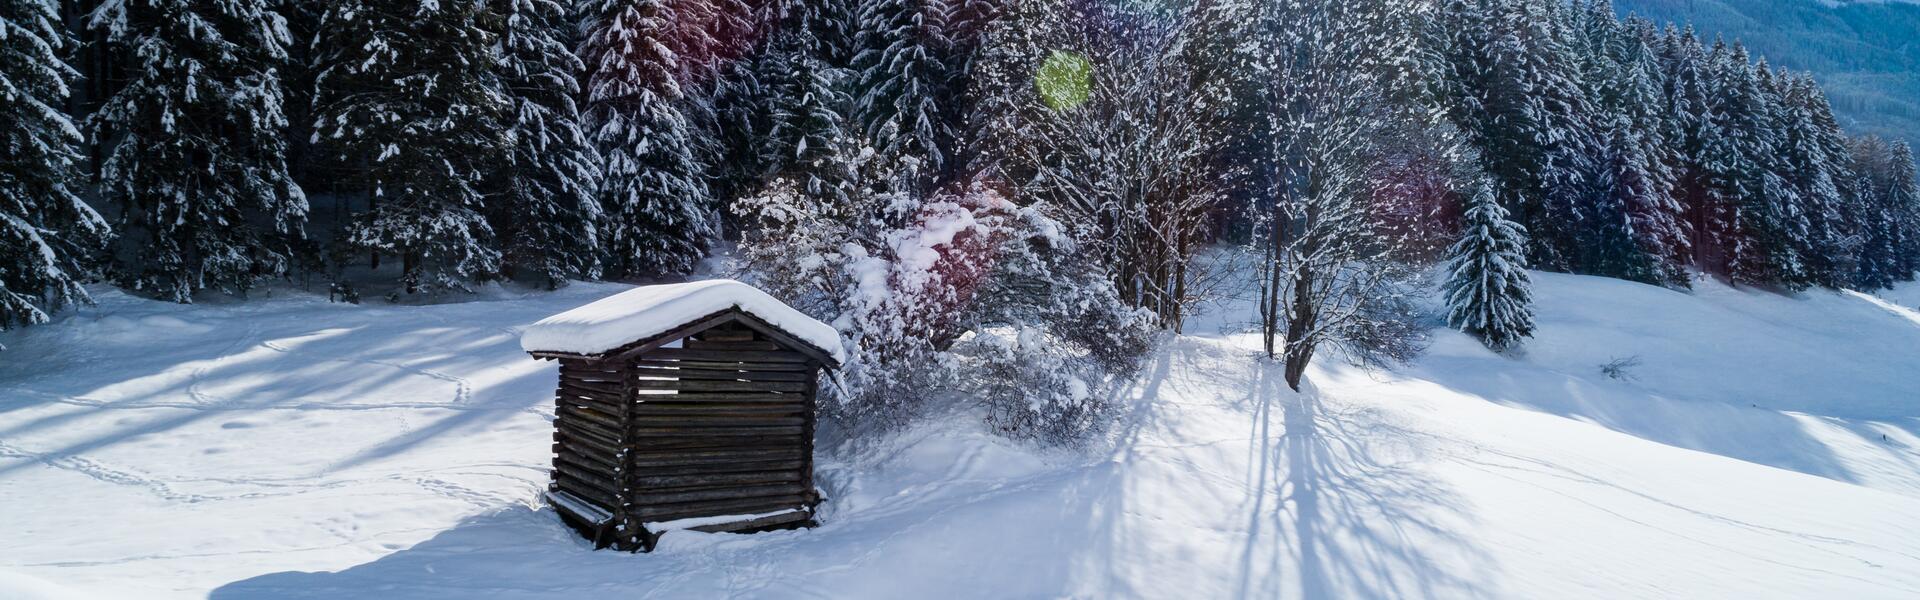 winter am wildkogel | © David Innerhofer